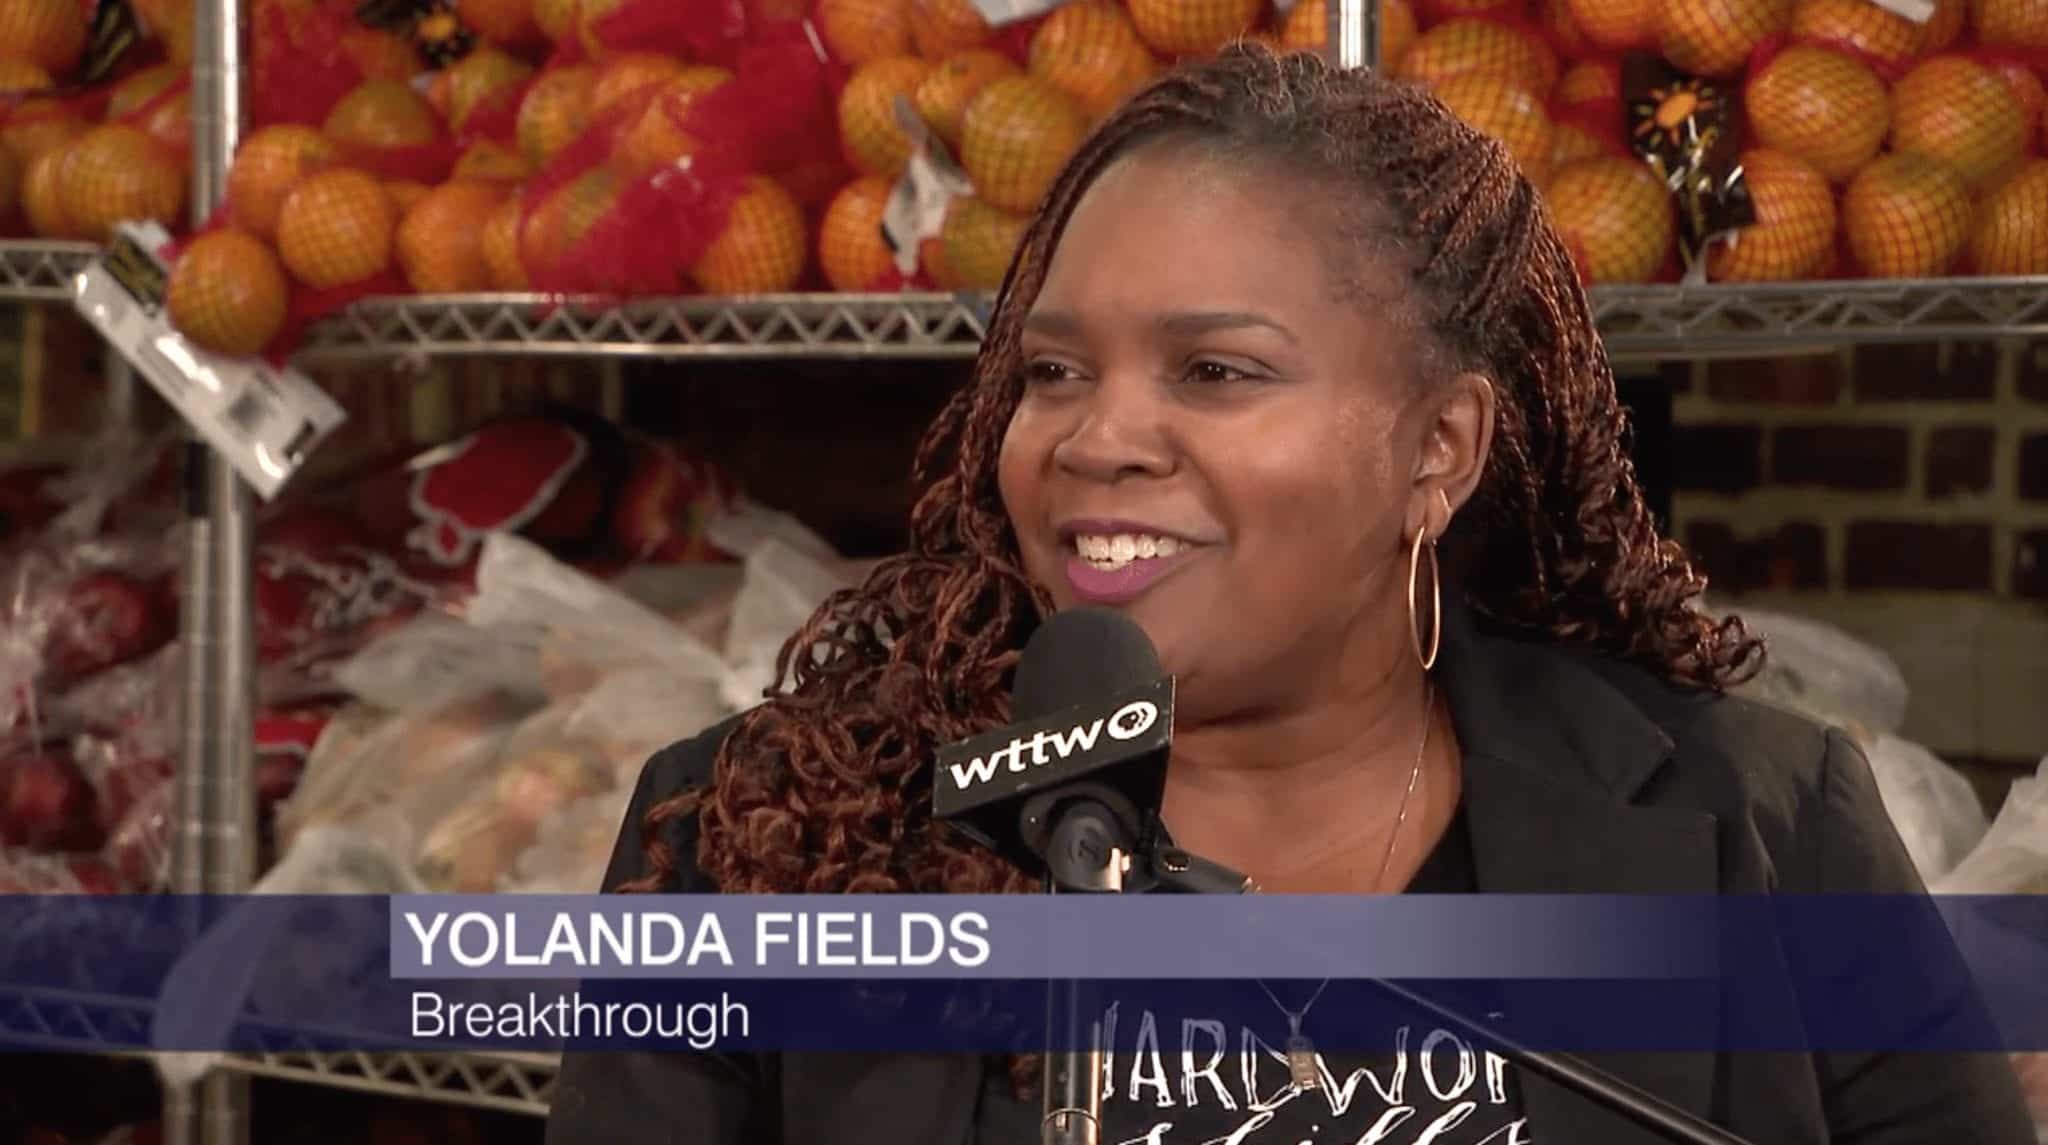 Yolanda Fields interview with WTTW at the Breakthrough Fresh Market